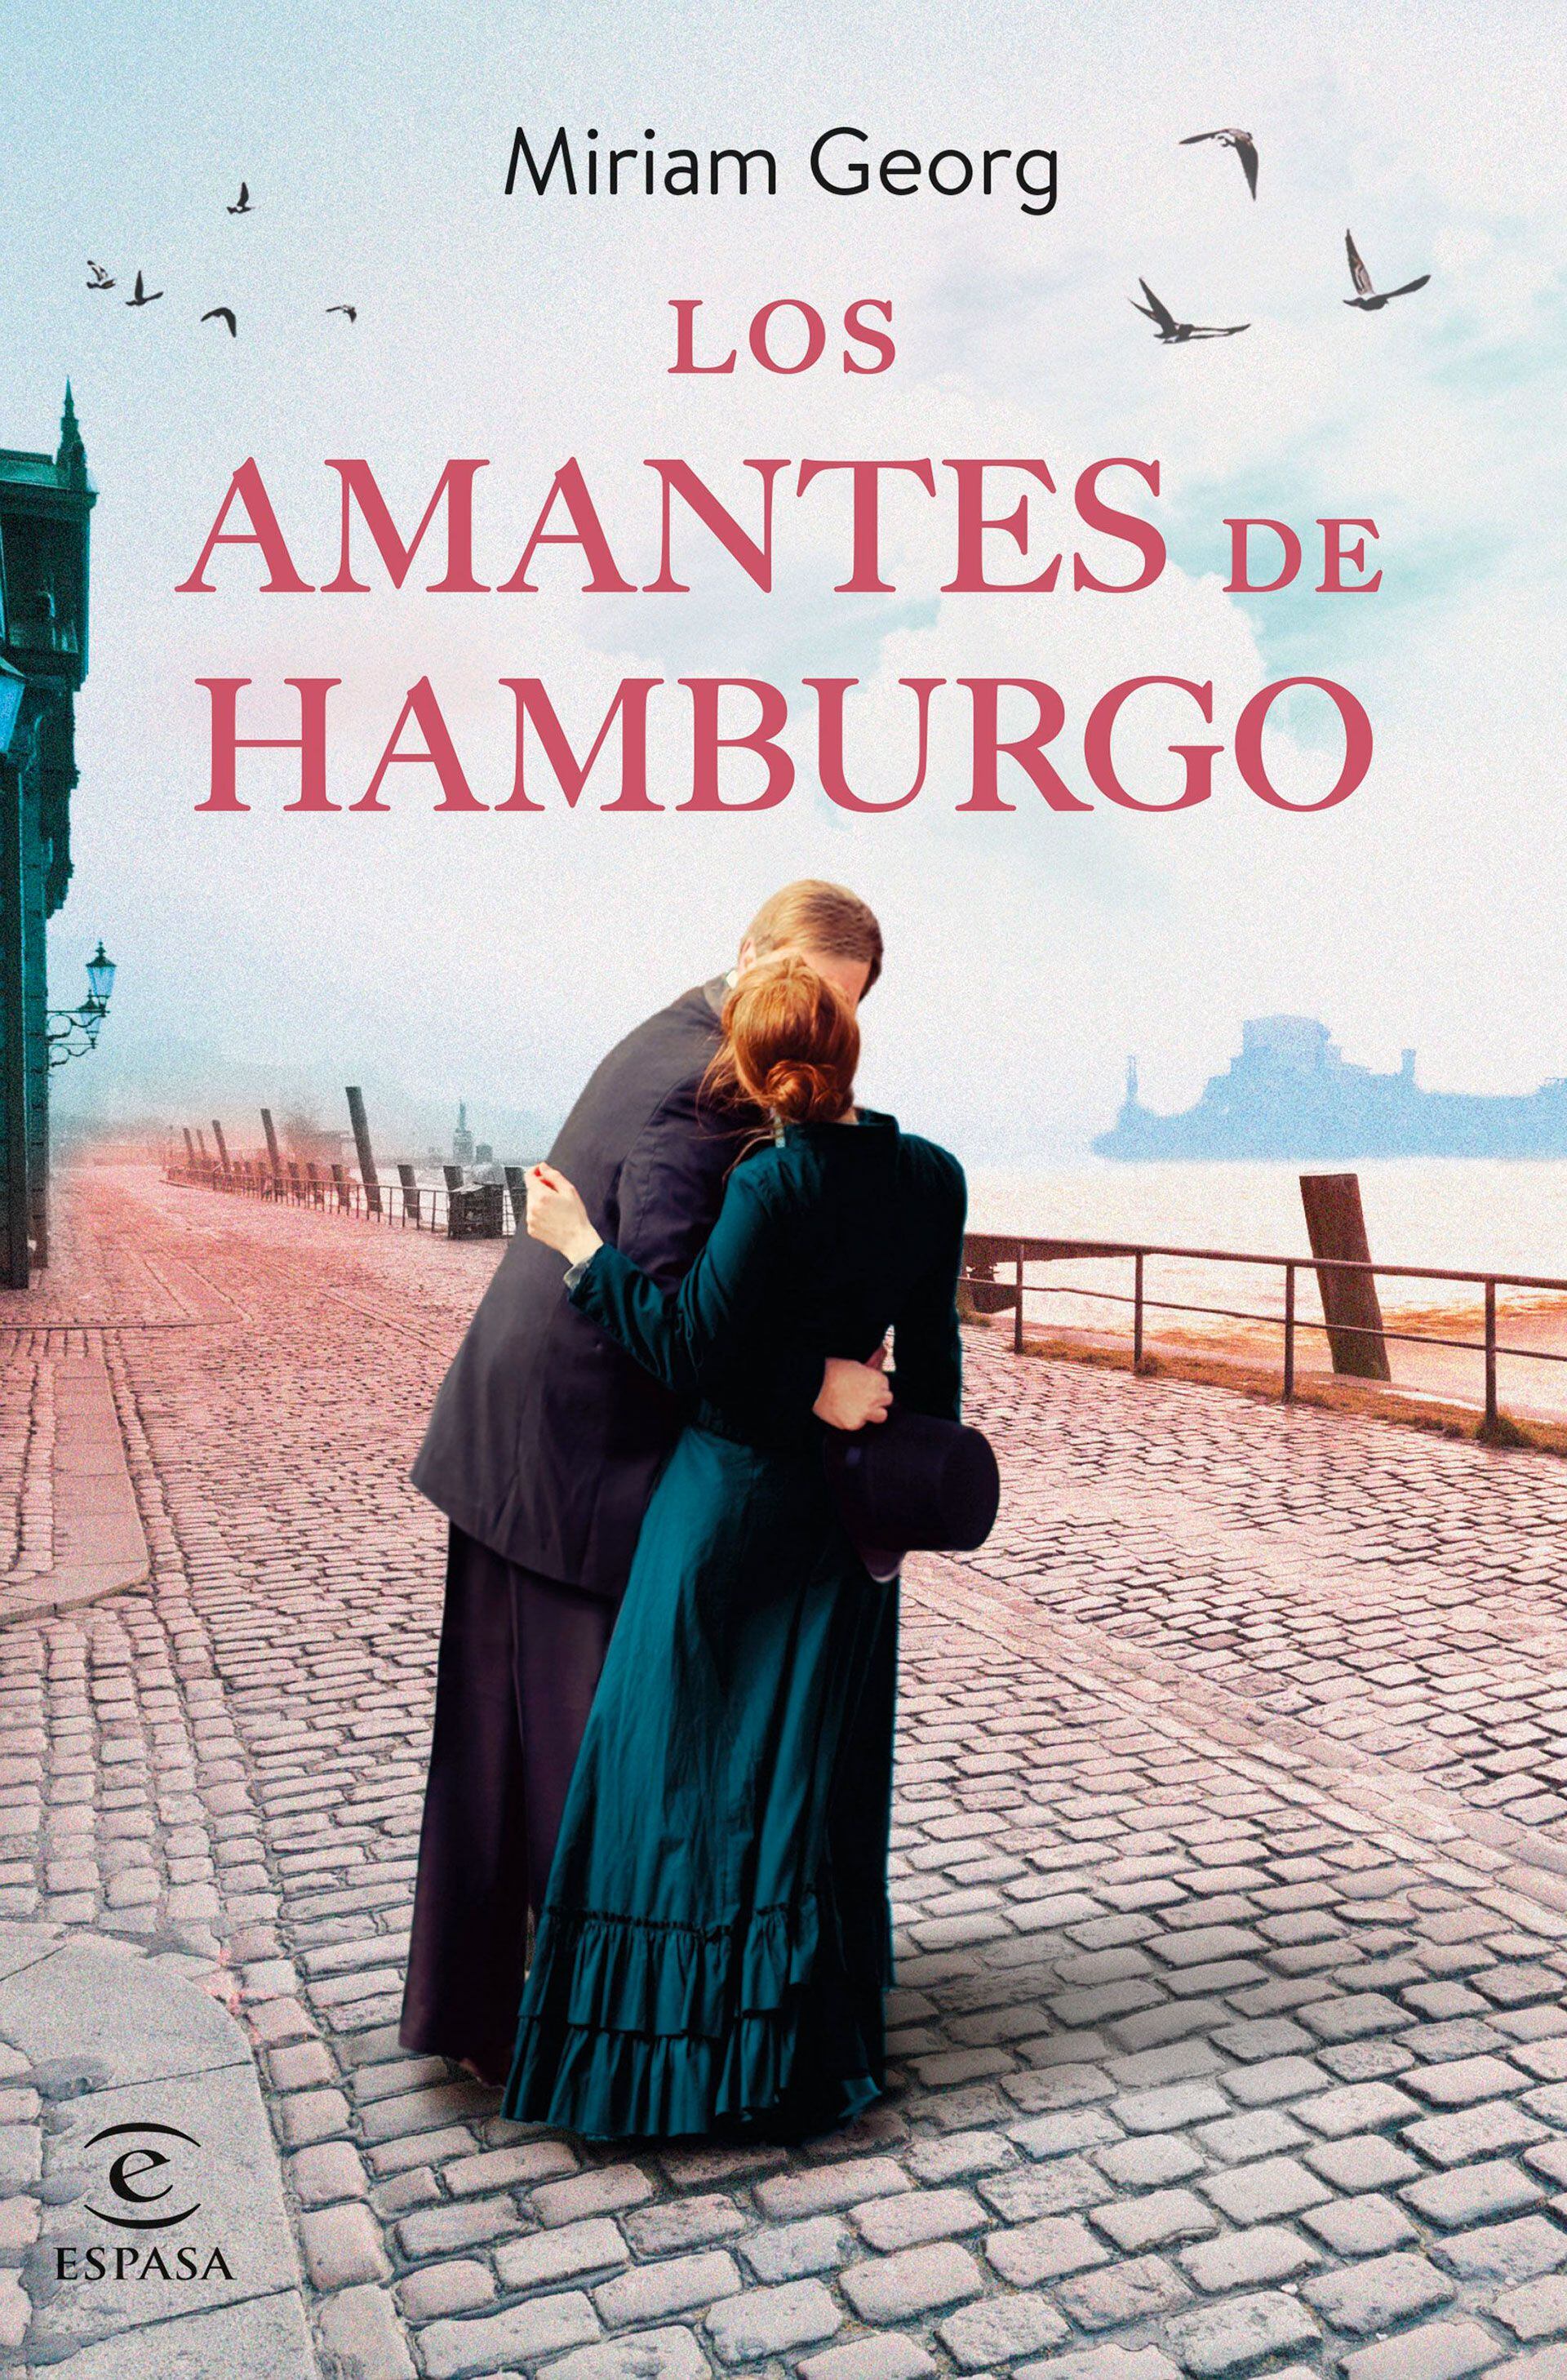 “Los amantes de Hamburgo” de Miriam Georg (Editorial Espasa)